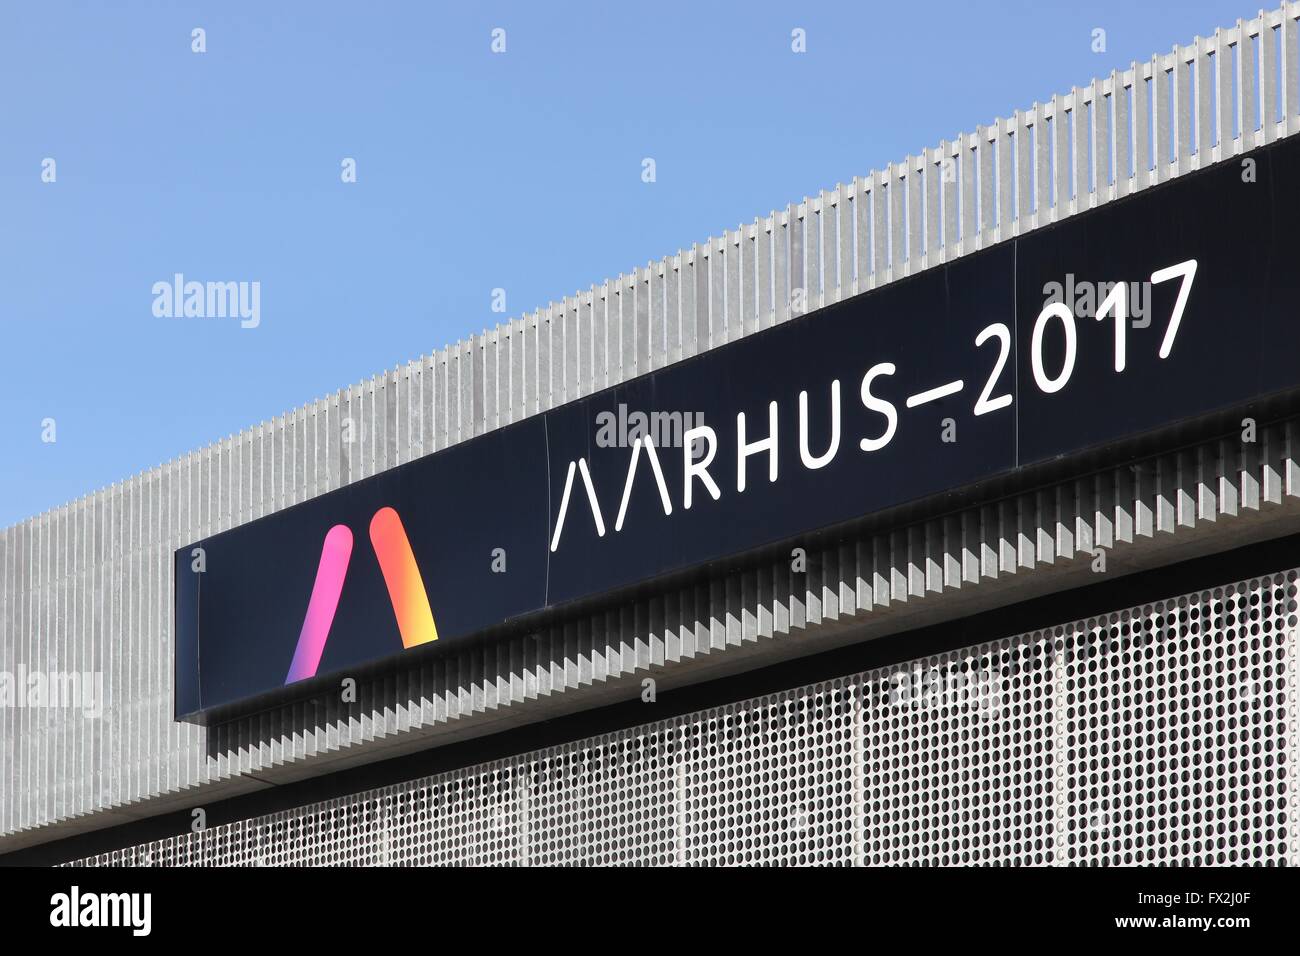 Façade du mediaspace au dokk1 à Aarhus Aarhus annonce capitale européenne de la culture en 2017 Banque D'Images